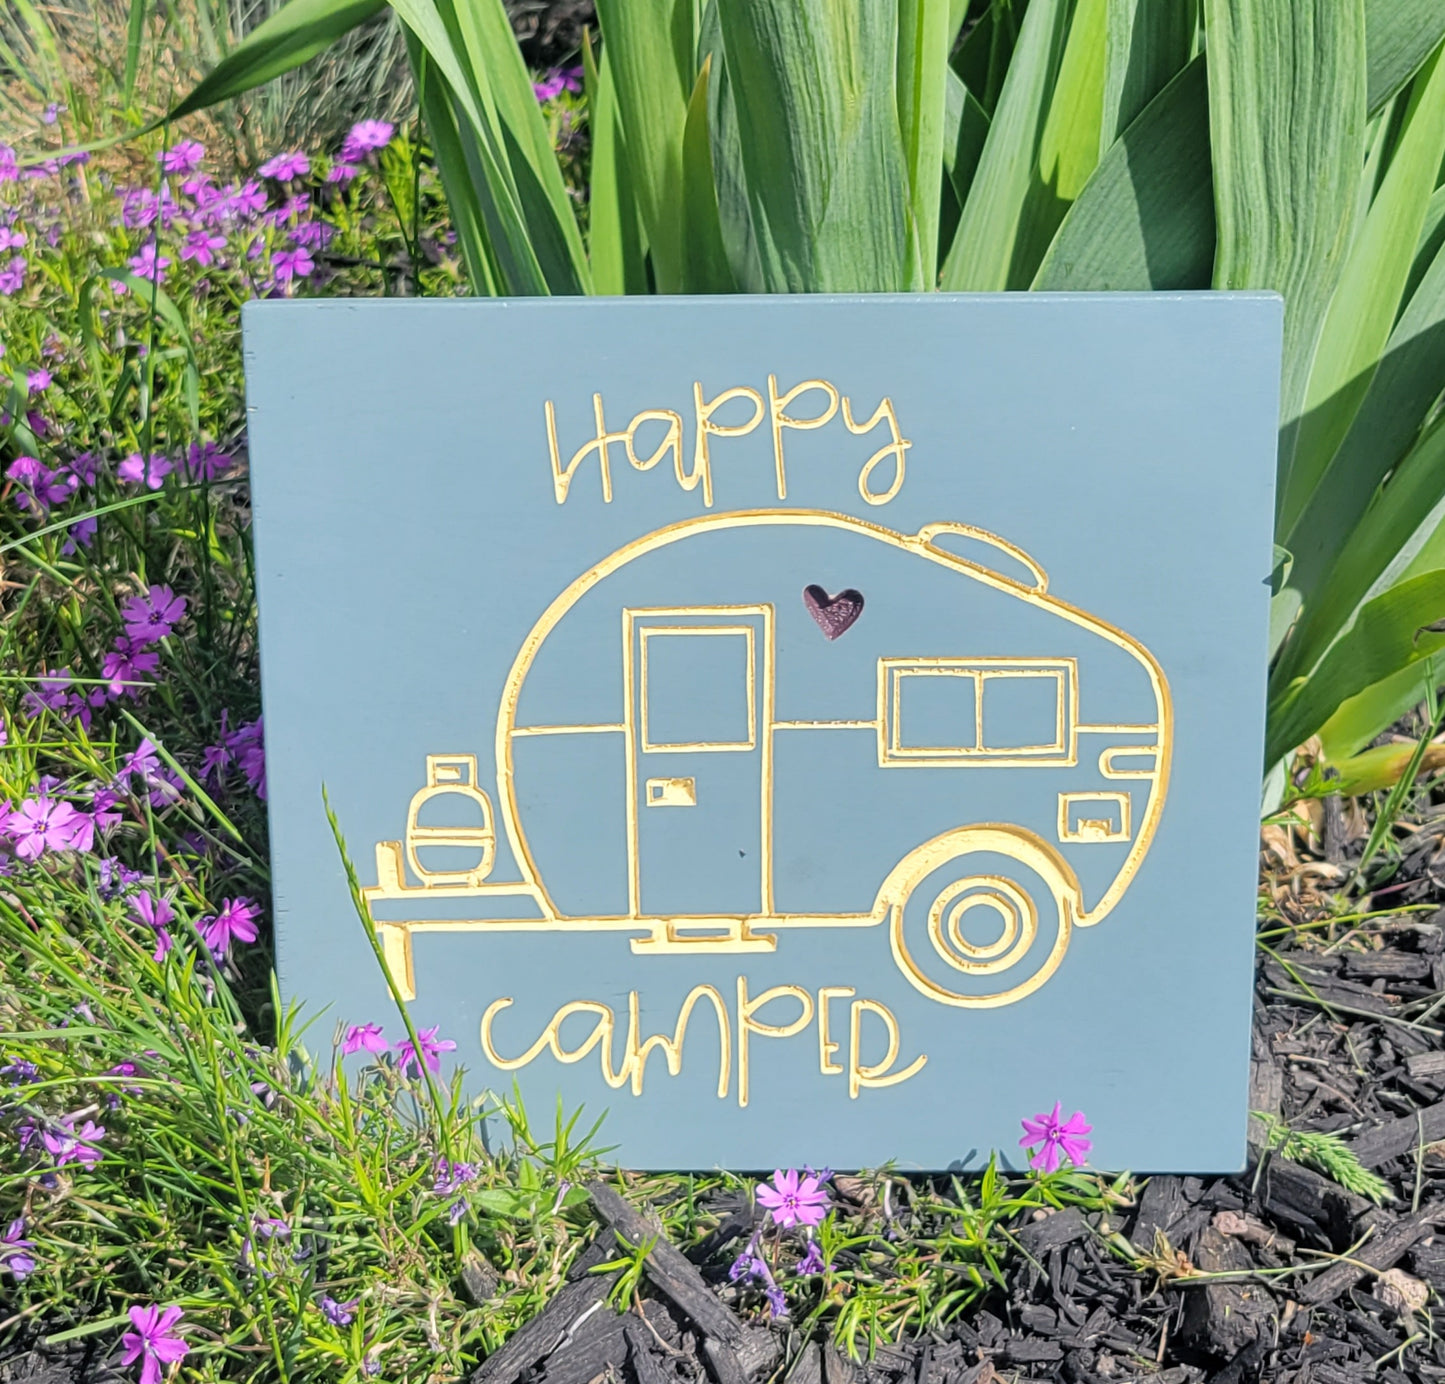 Happy camper